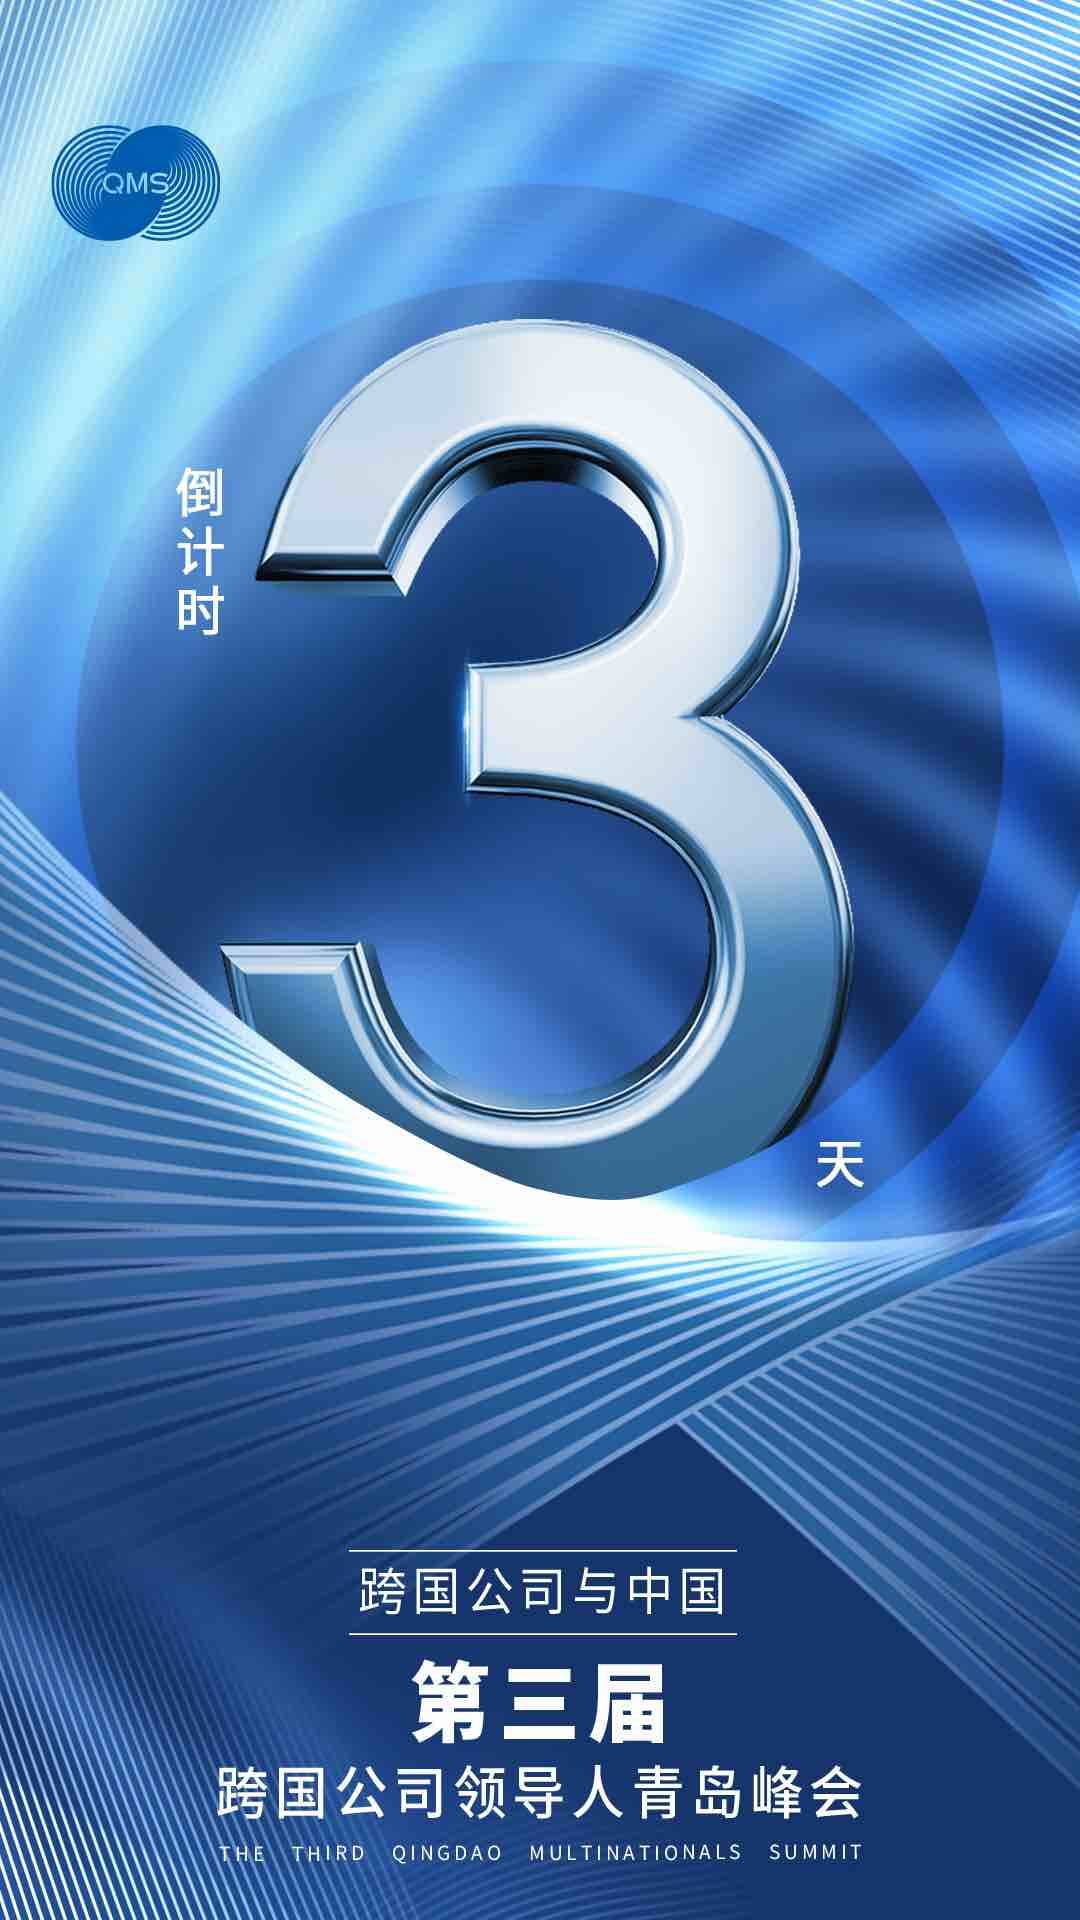 倒計時三天！跨國公司與中國主題展將于6月19日在青島開幕